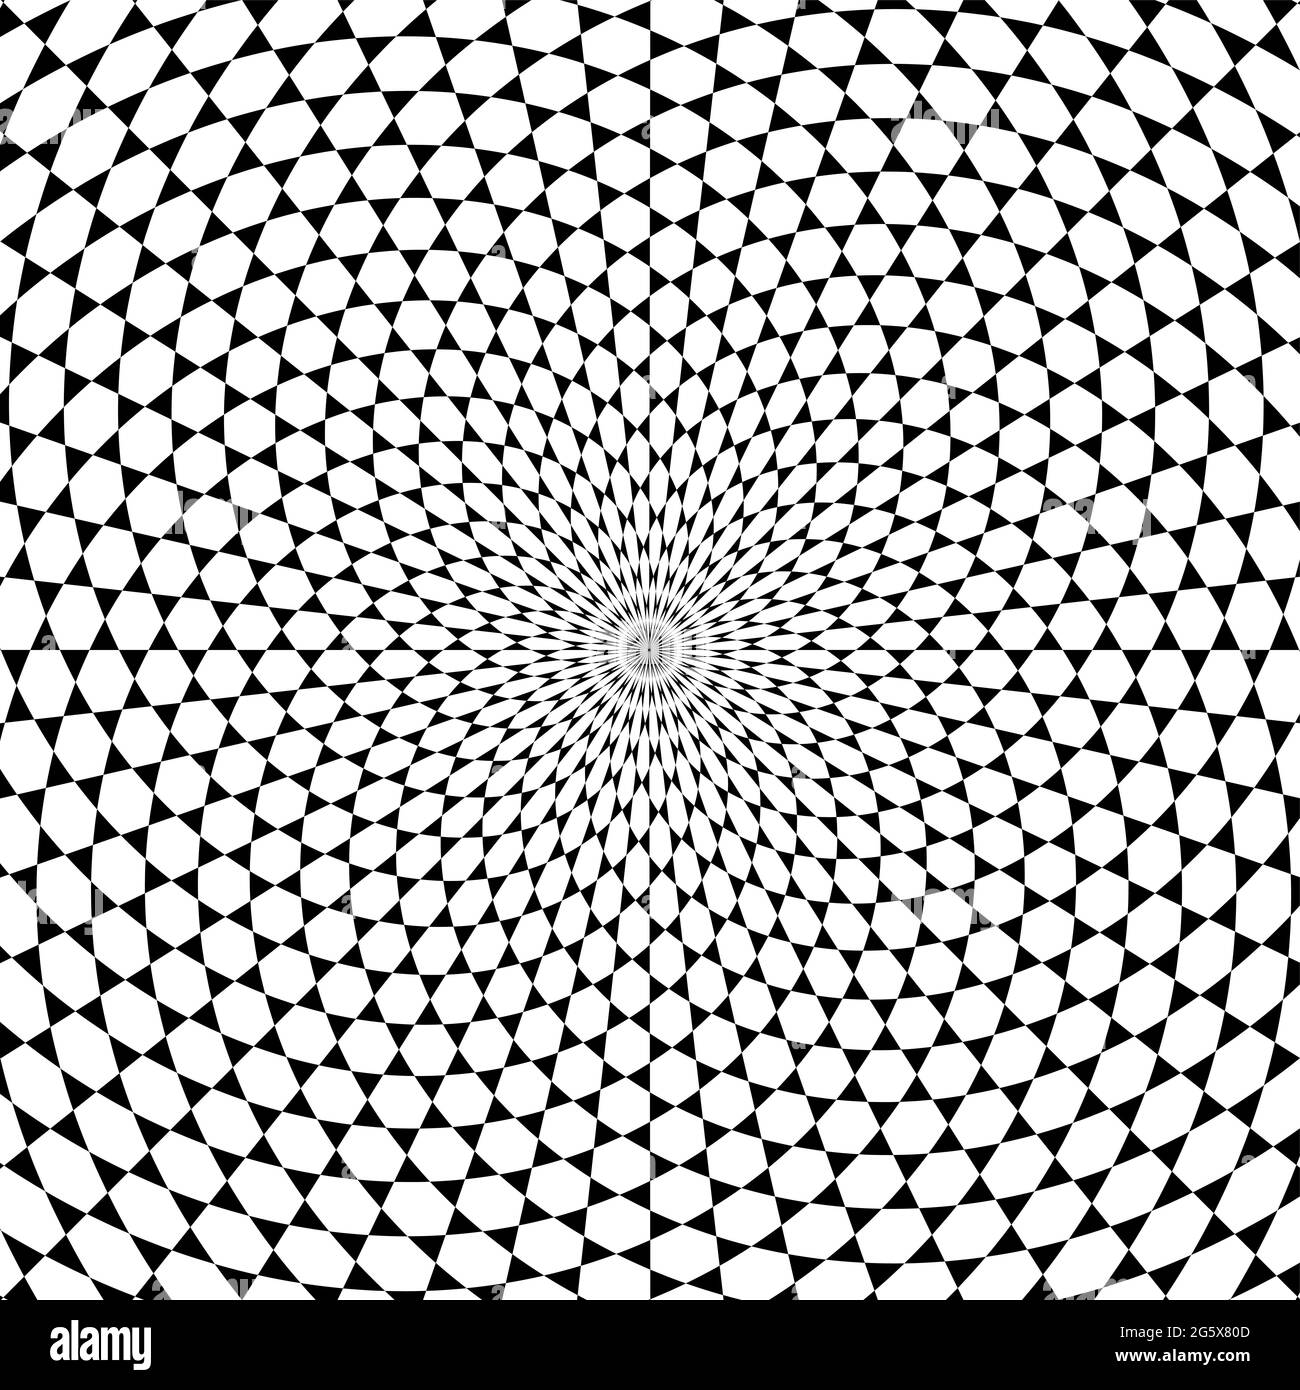 Davidstern Muster Spirale Hintergrund. Weiße Sechsecke umgeben von schwarzen Dreiecken, die sich in einer Spirale von der Mitte nach außen entwickeln. Stockfoto